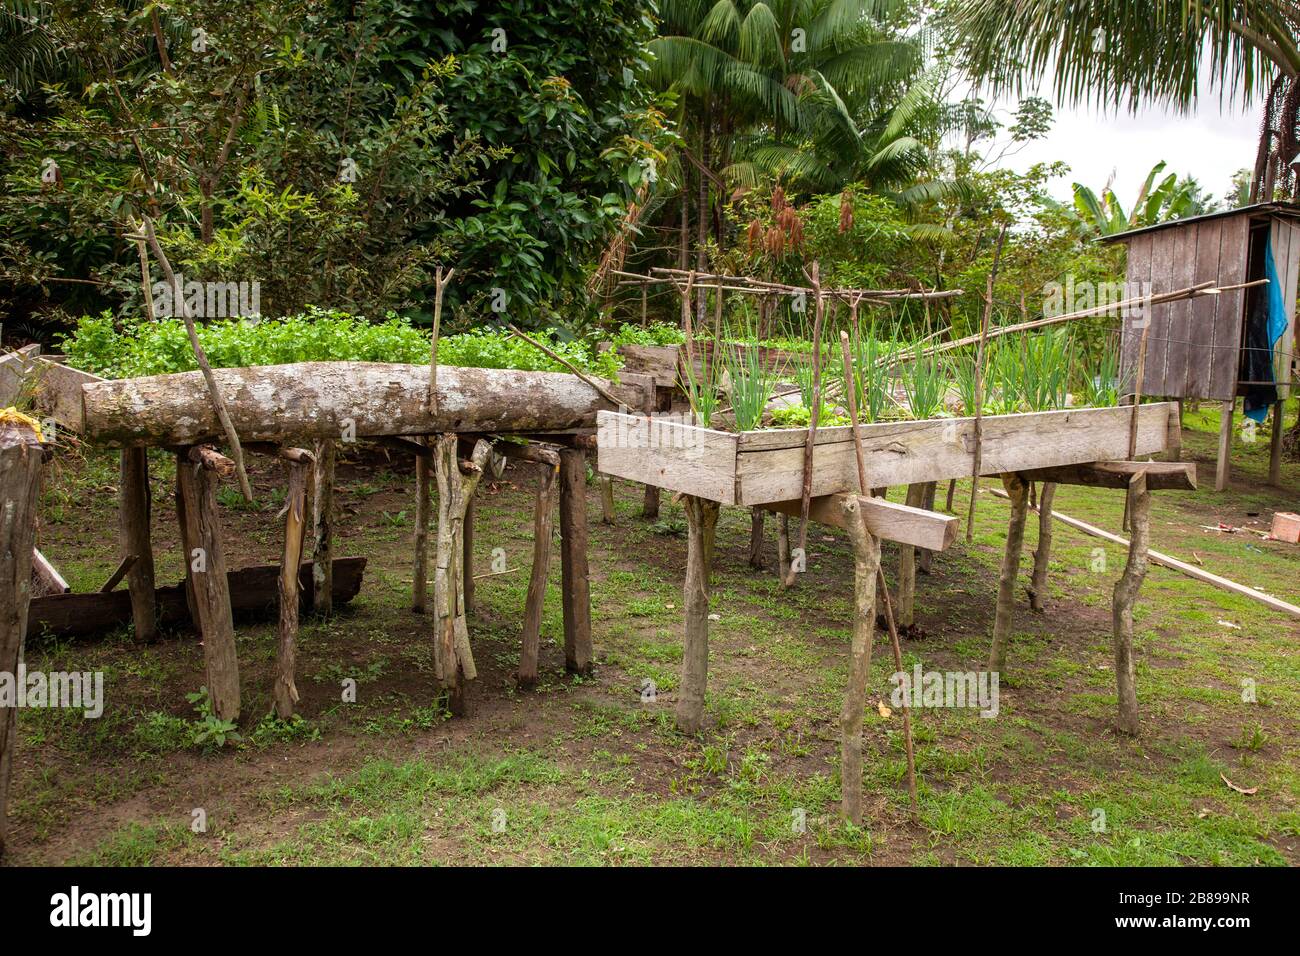 Lits de jardin surélevés indiens dans la forêt tropicale d'Amazonie. Pérou, Amérique du Sud. Banque D'Images